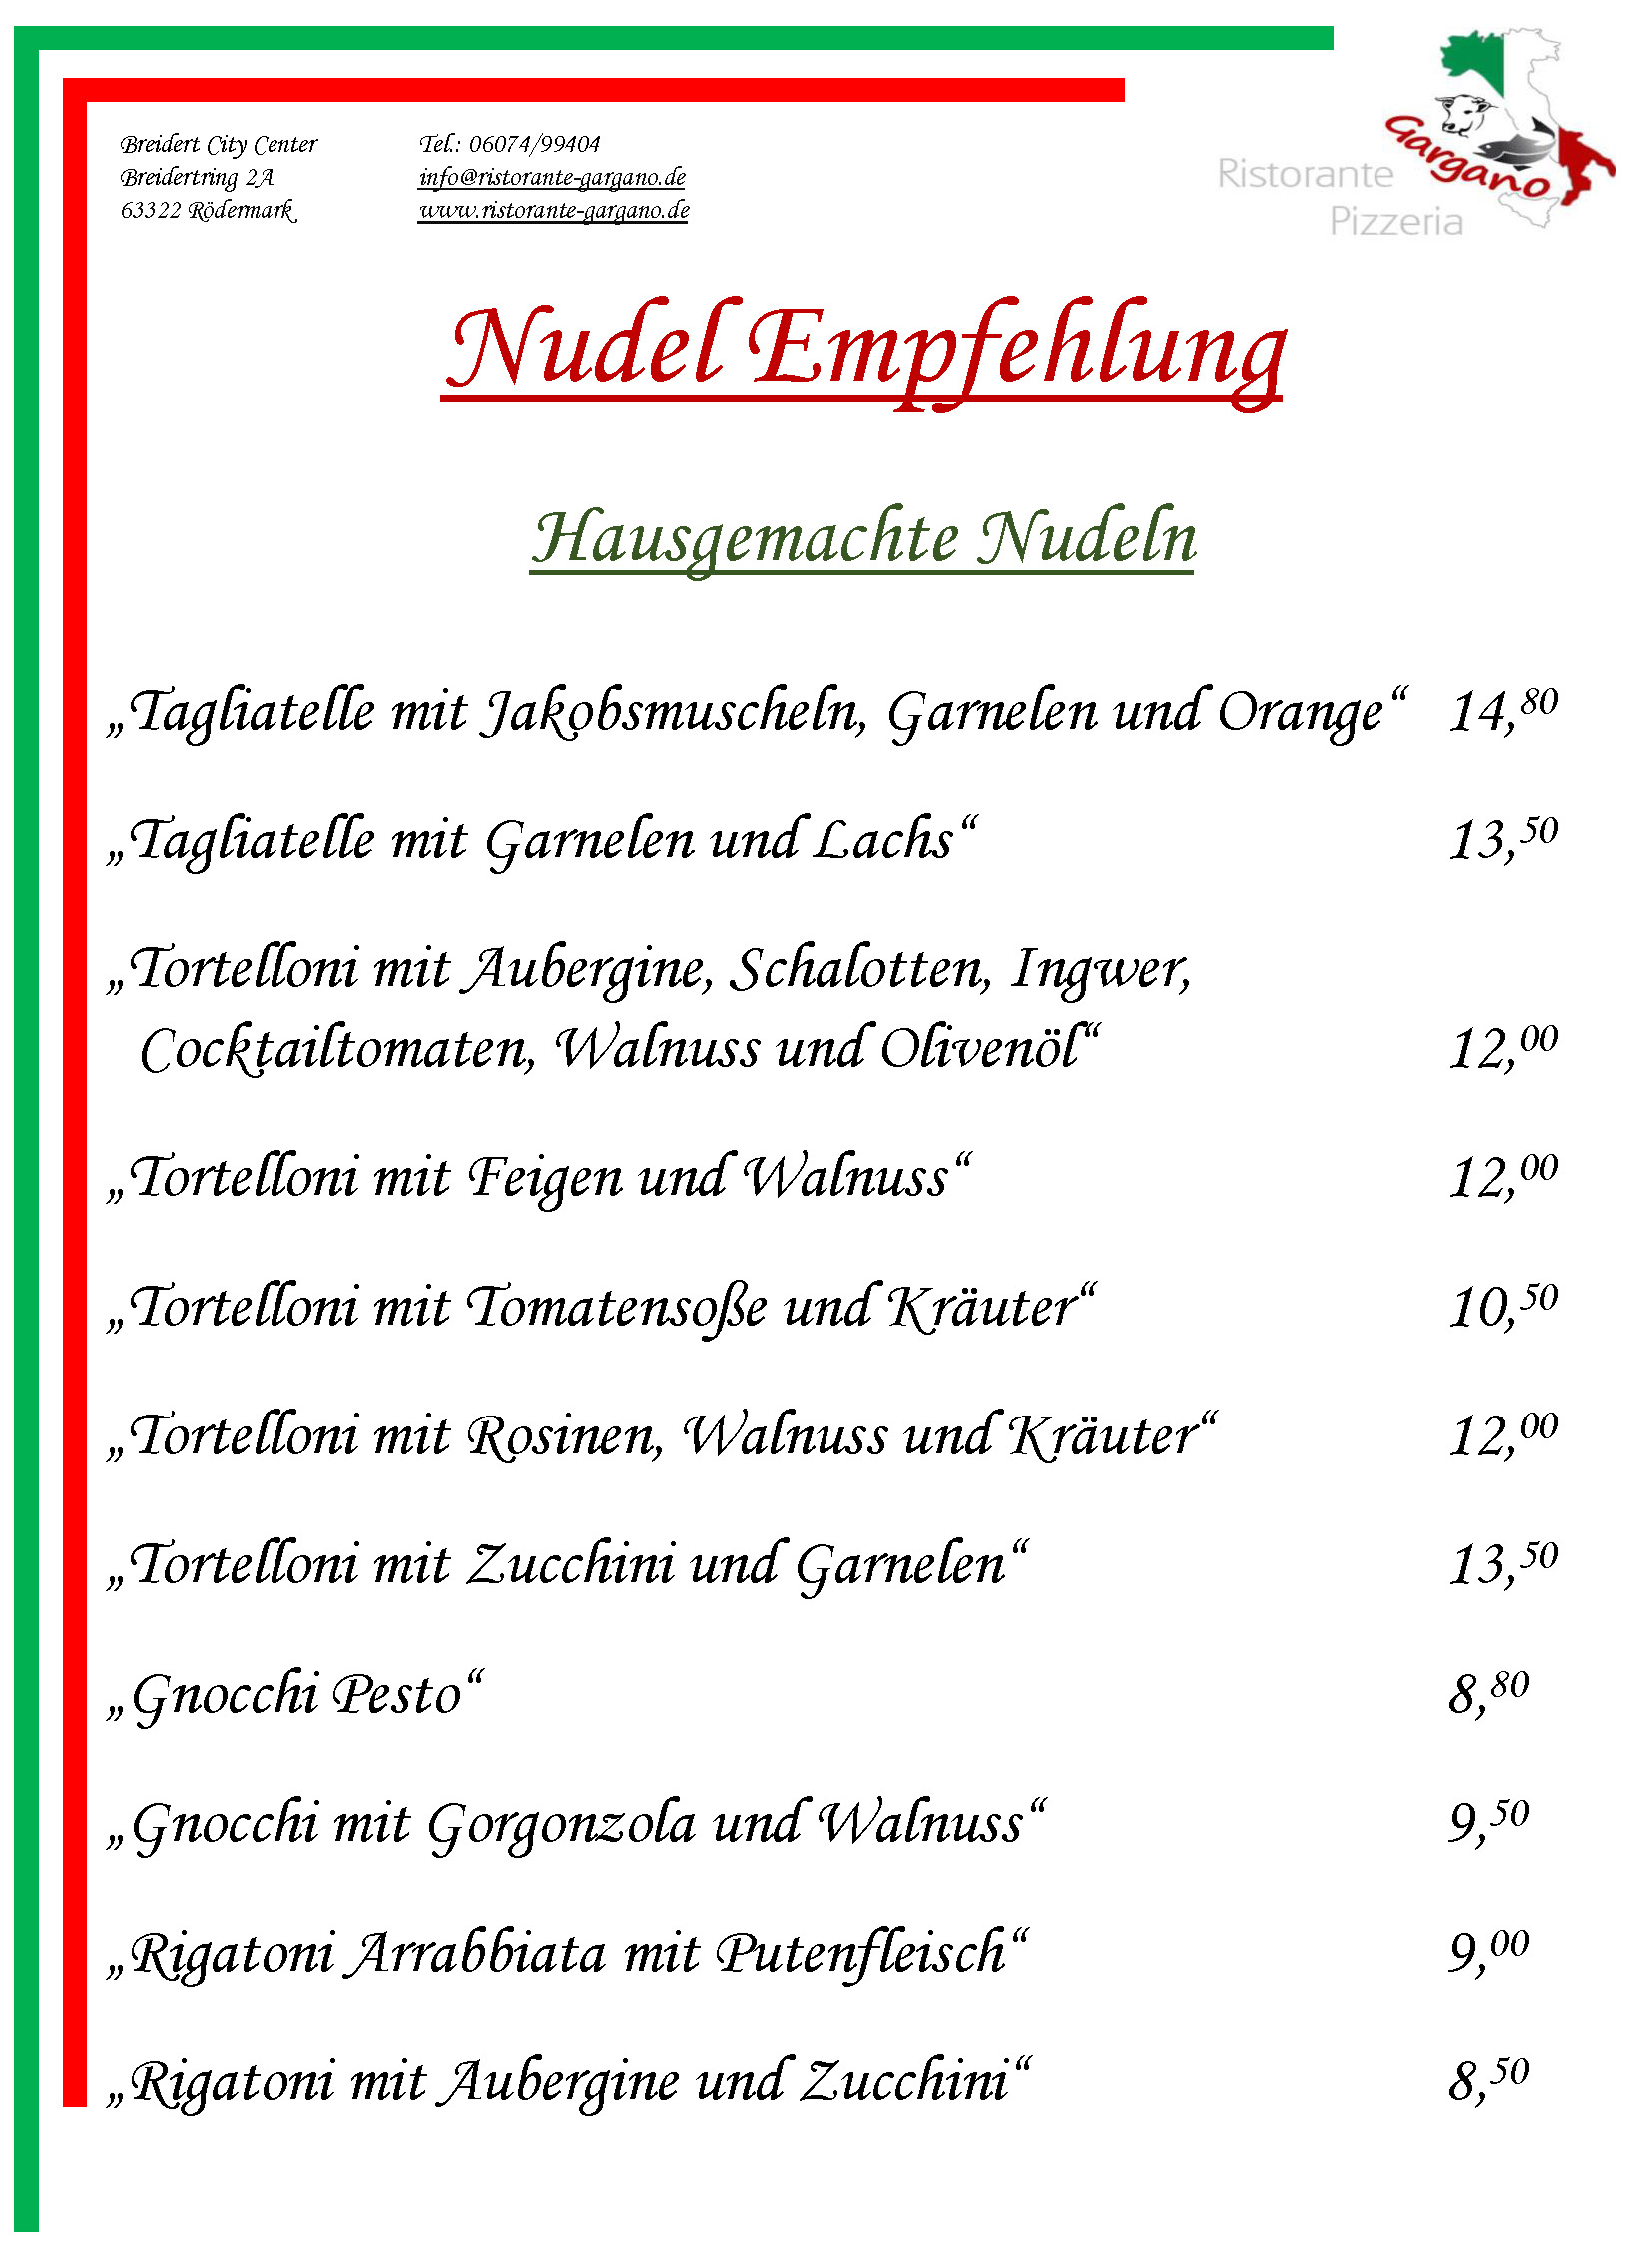 Nudel Empfehlung Ristorante & Pizzeria Gargano in Rödermark